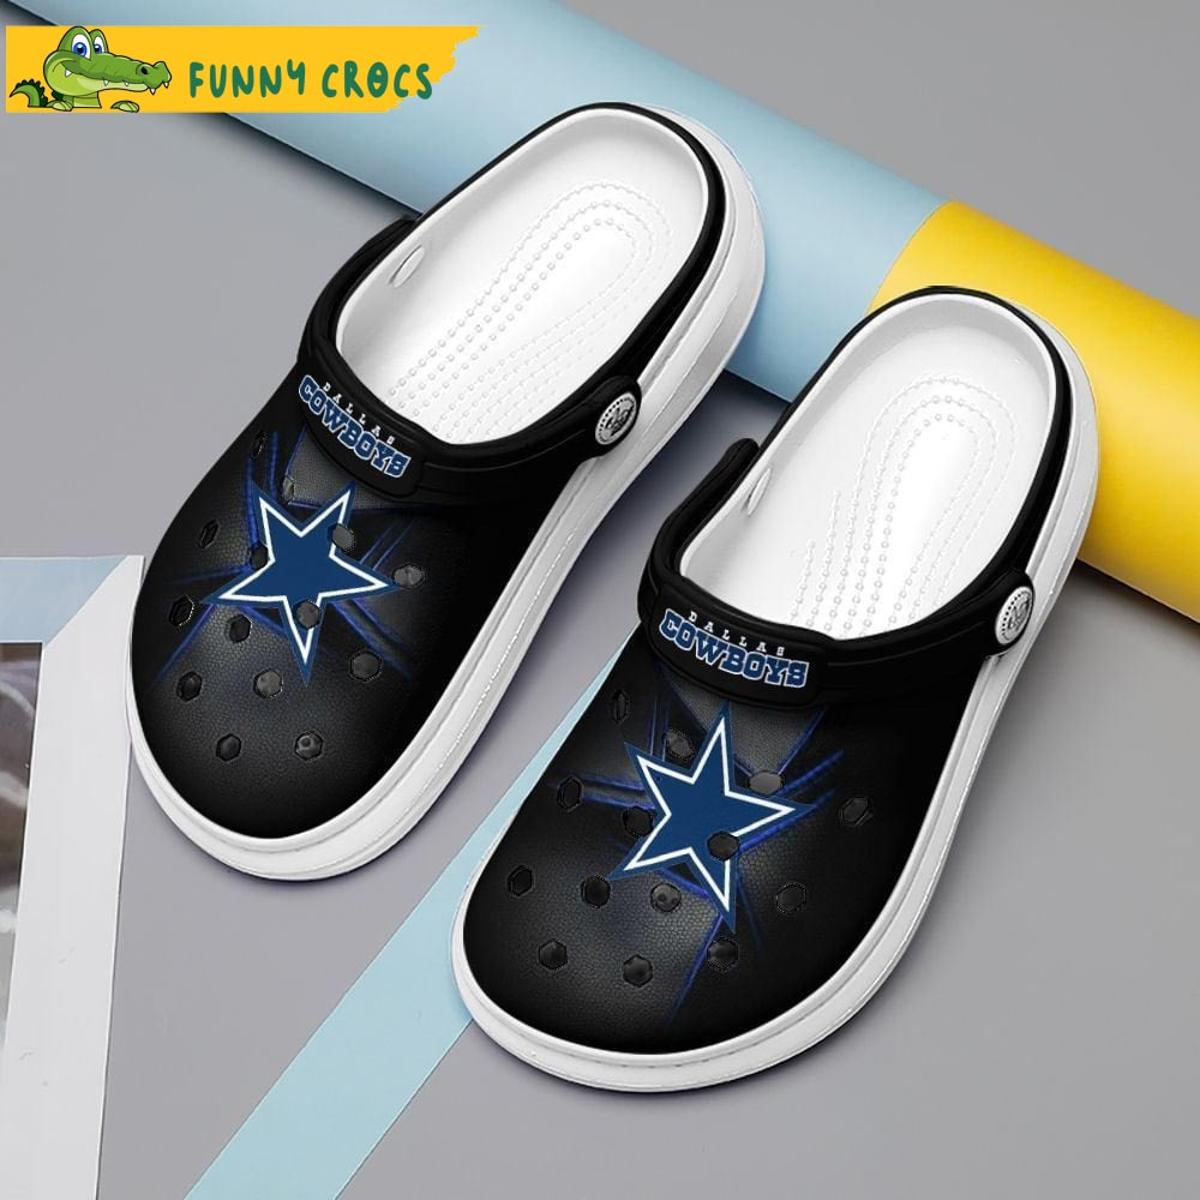 Funny Dallas Cowboys Crocs Clog Slippers